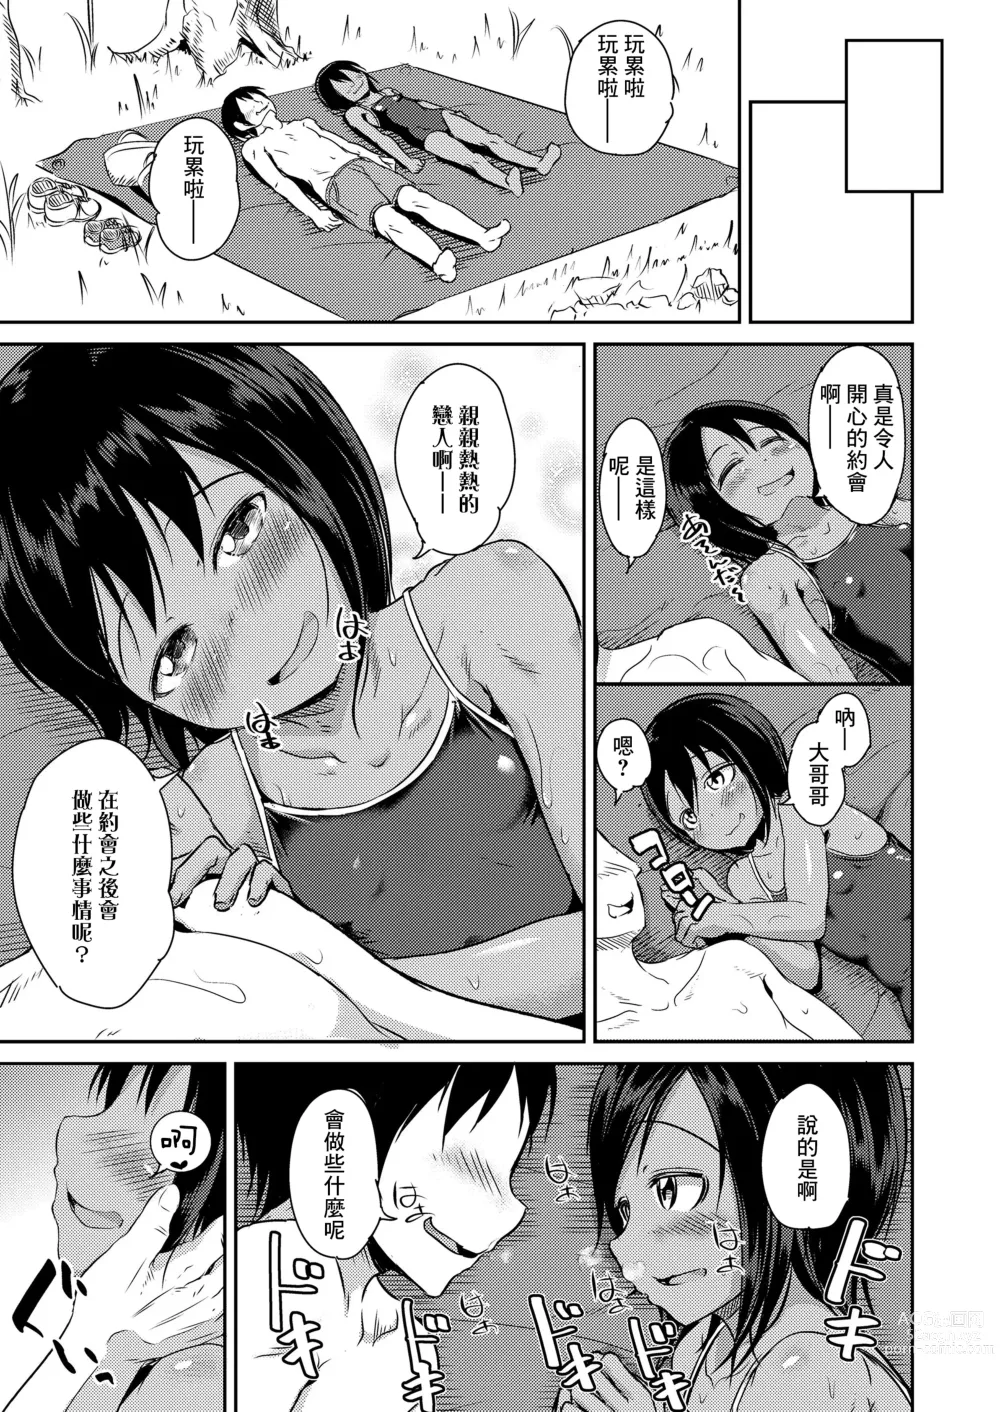 Page 5 of manga Kawabe de Mei Trap